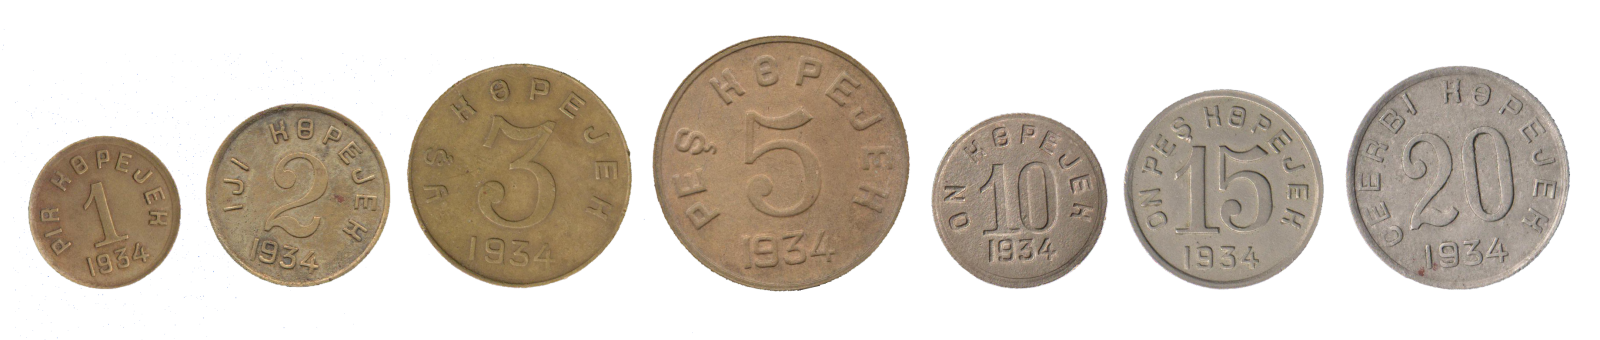 разменные монеты Тувинской Народной Республики ТНР образца 1934 года